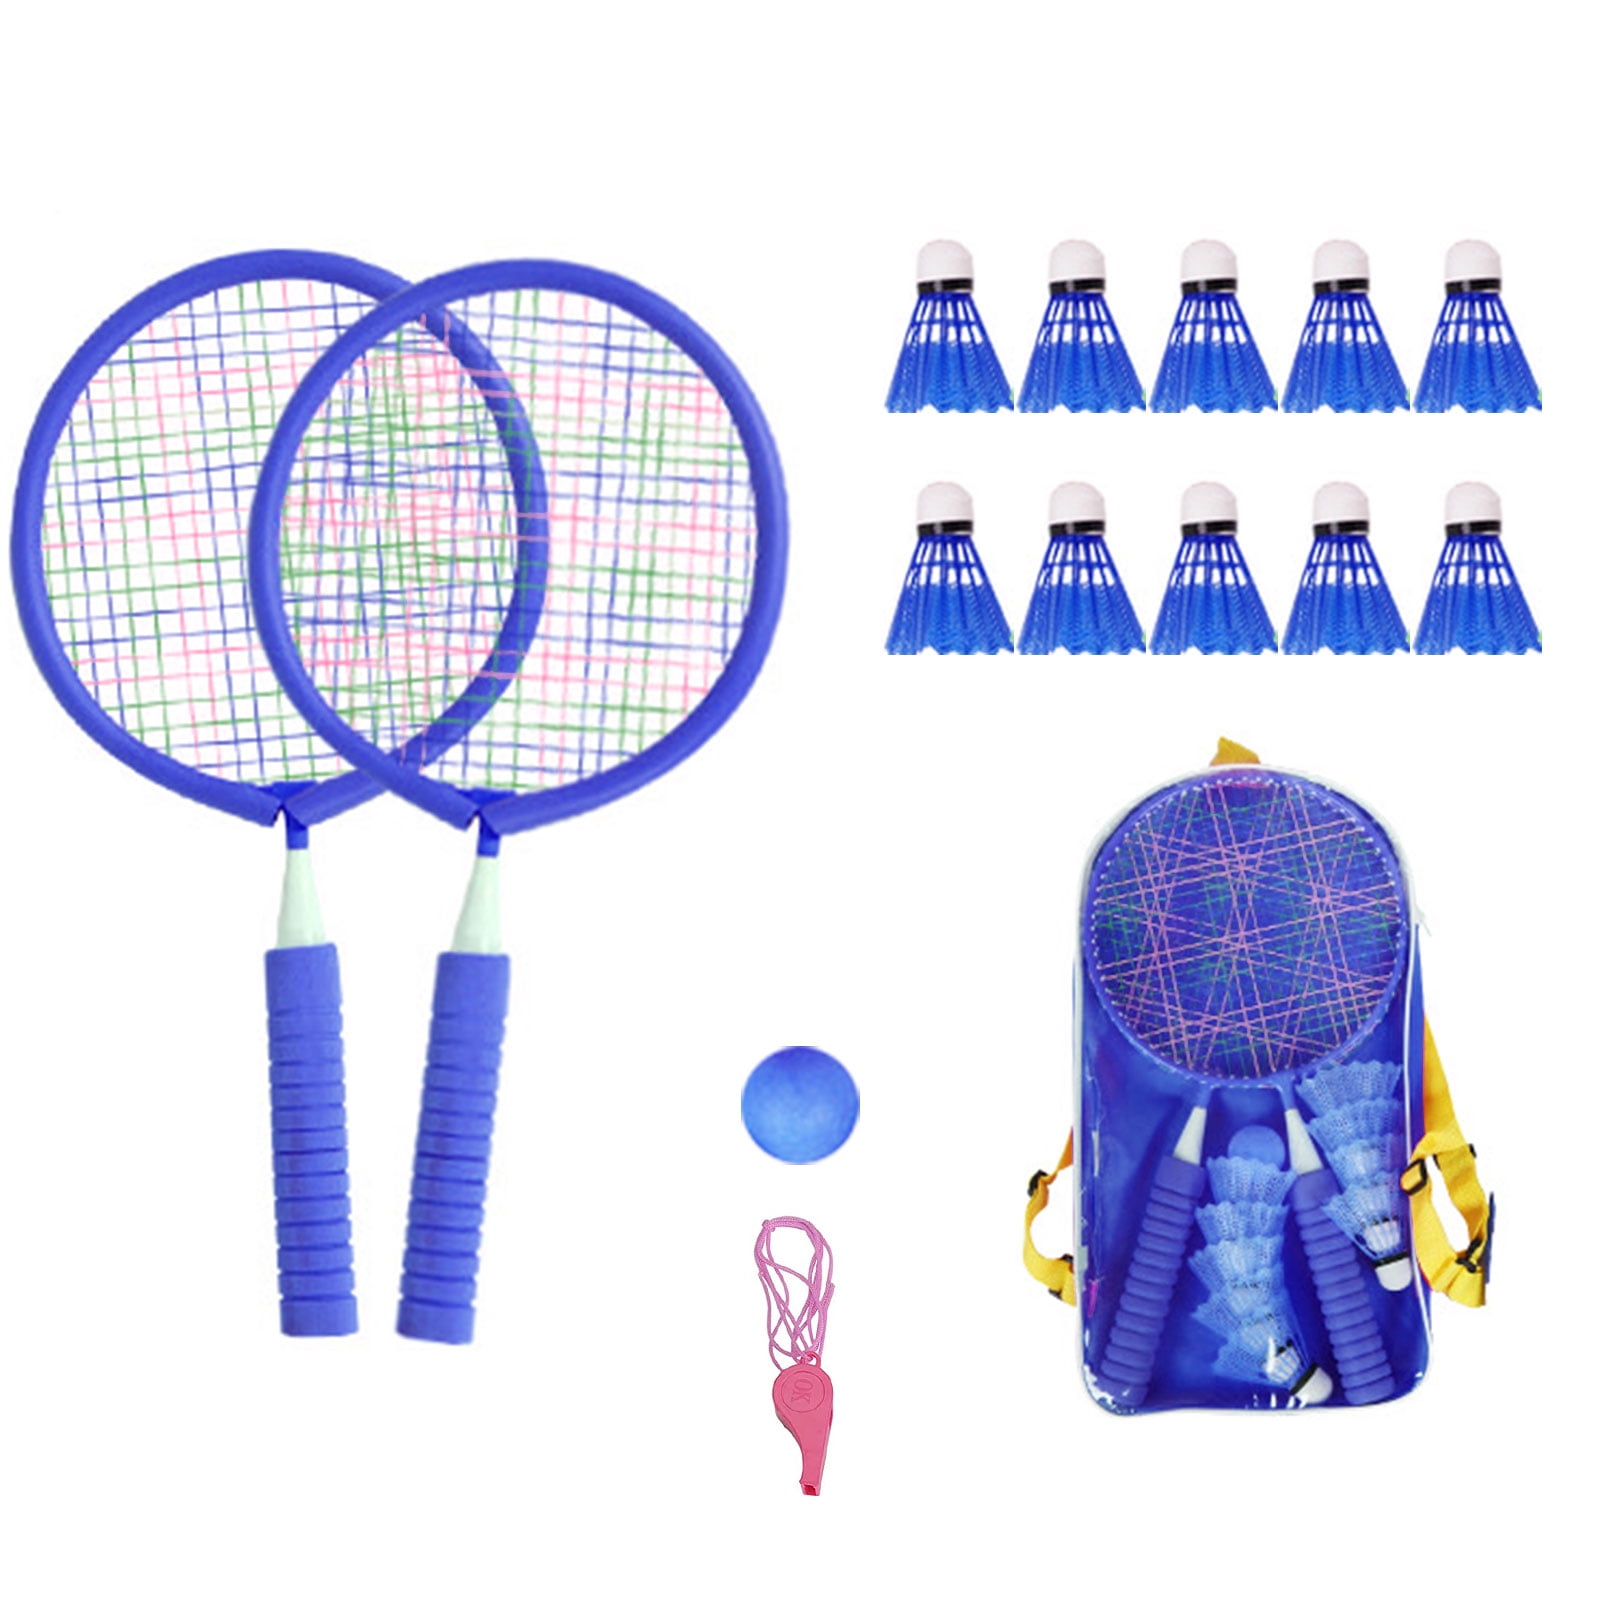 Carlton Unisex 2 Player Badminton Set Rackets & Shuttlecocks for sale online 